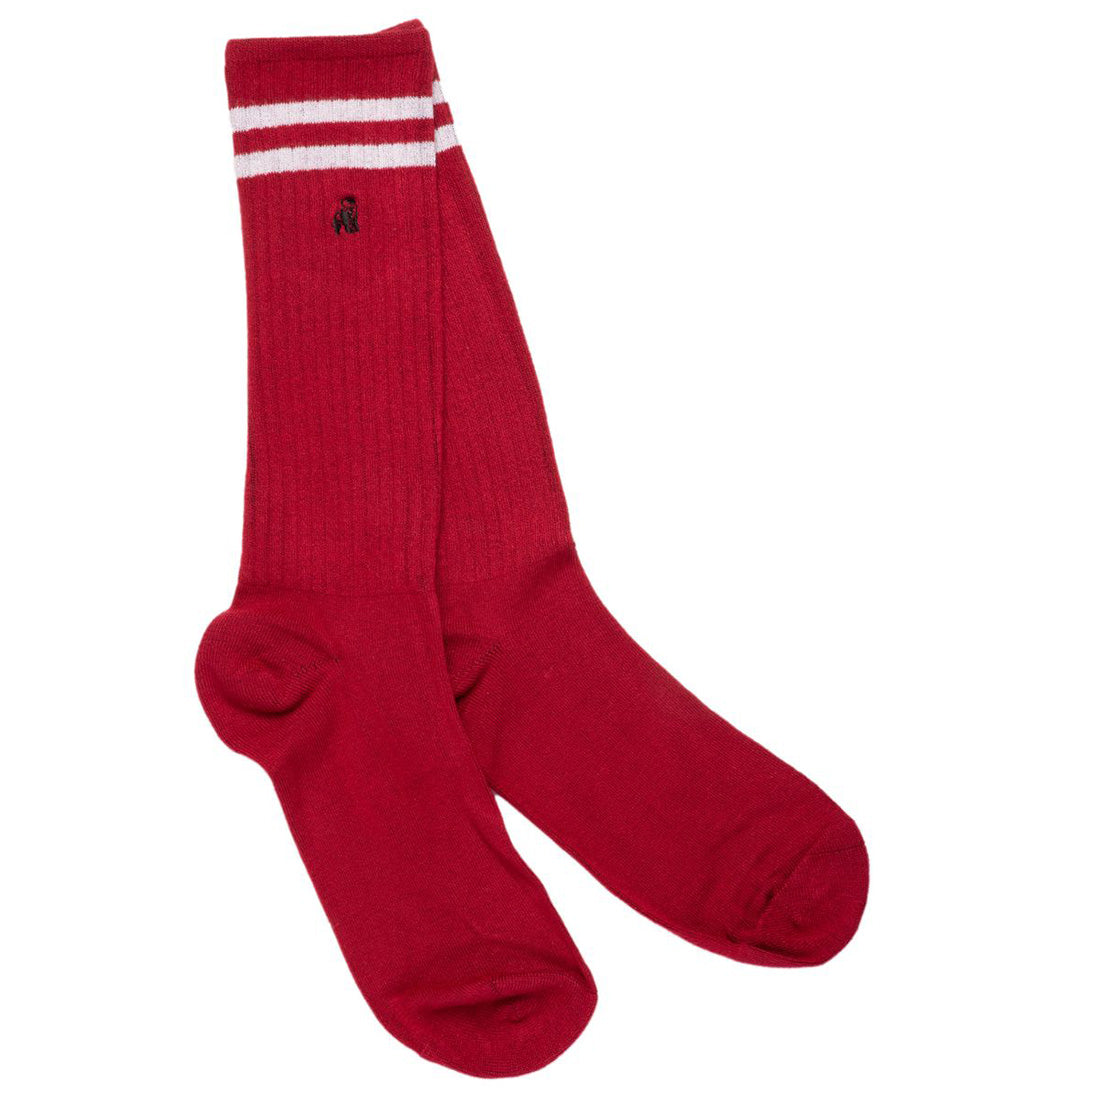 socks-red-athletic-bamboo-socks-1.jpg